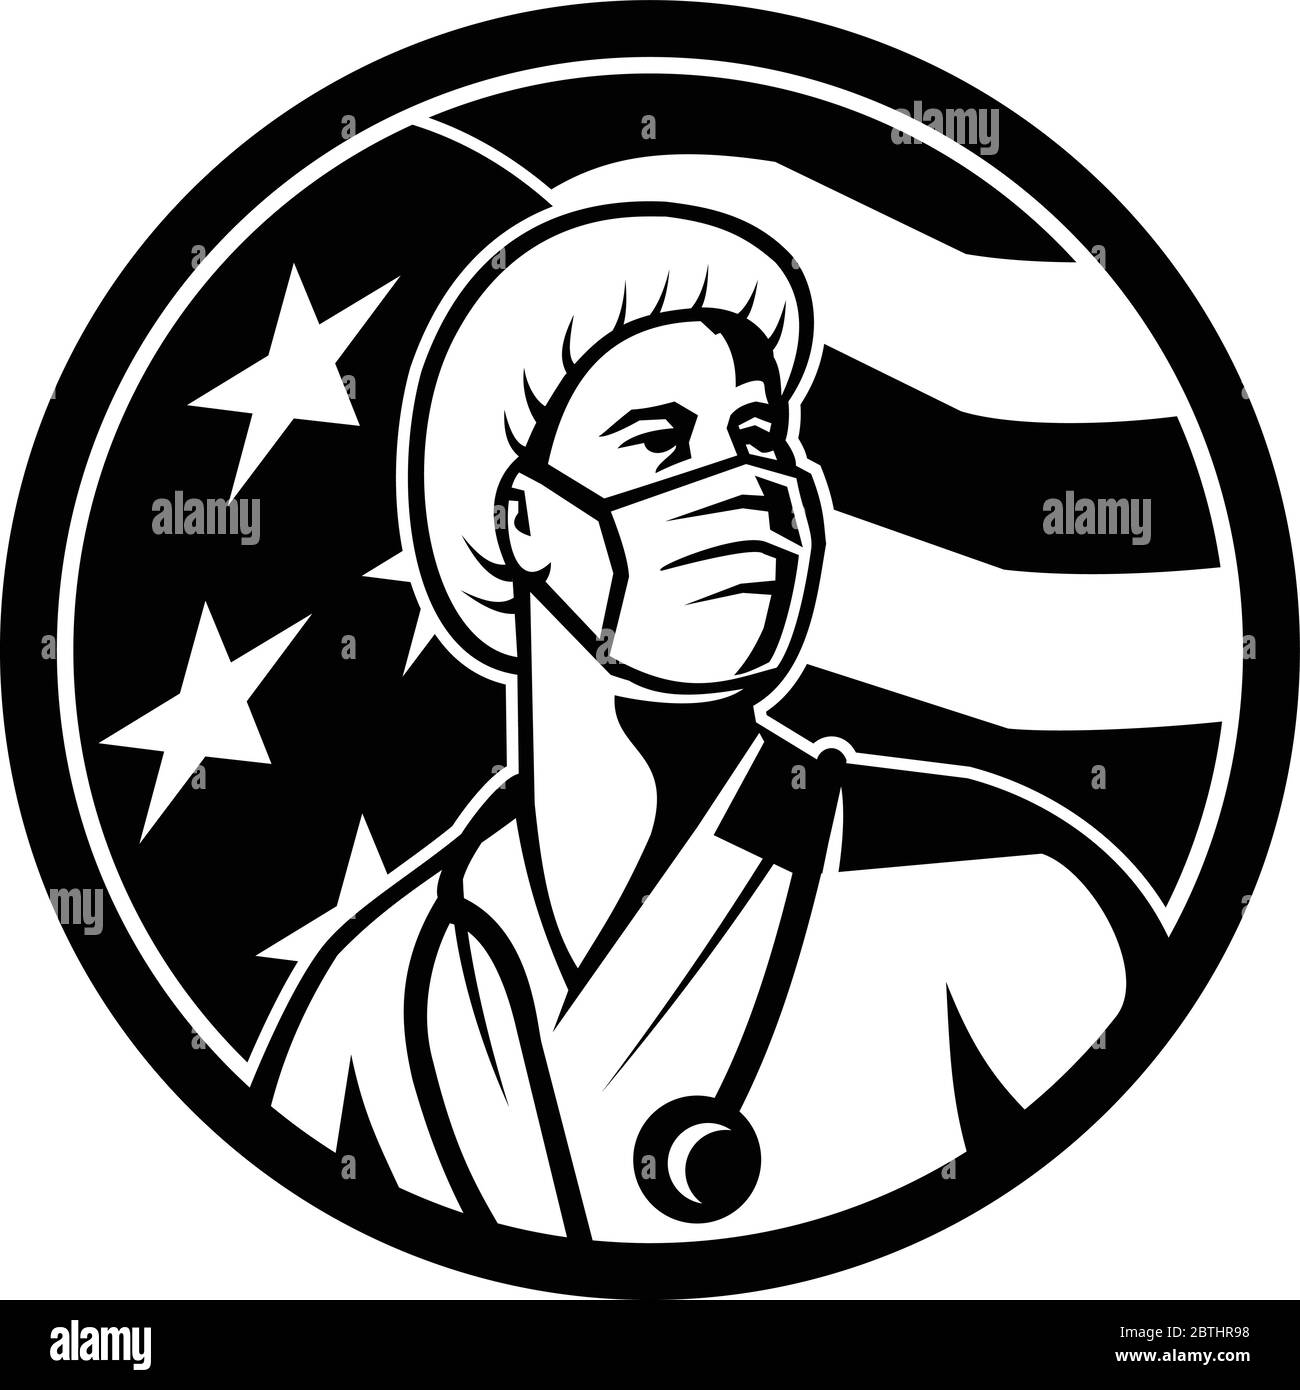 Mascot illustrazione di una femmina americana infermiera, professionista sanitario o medico, indossando maschera chirurgica guardando in su con le stelle e striscia degli Stati Uniti Illustrazione Vettoriale